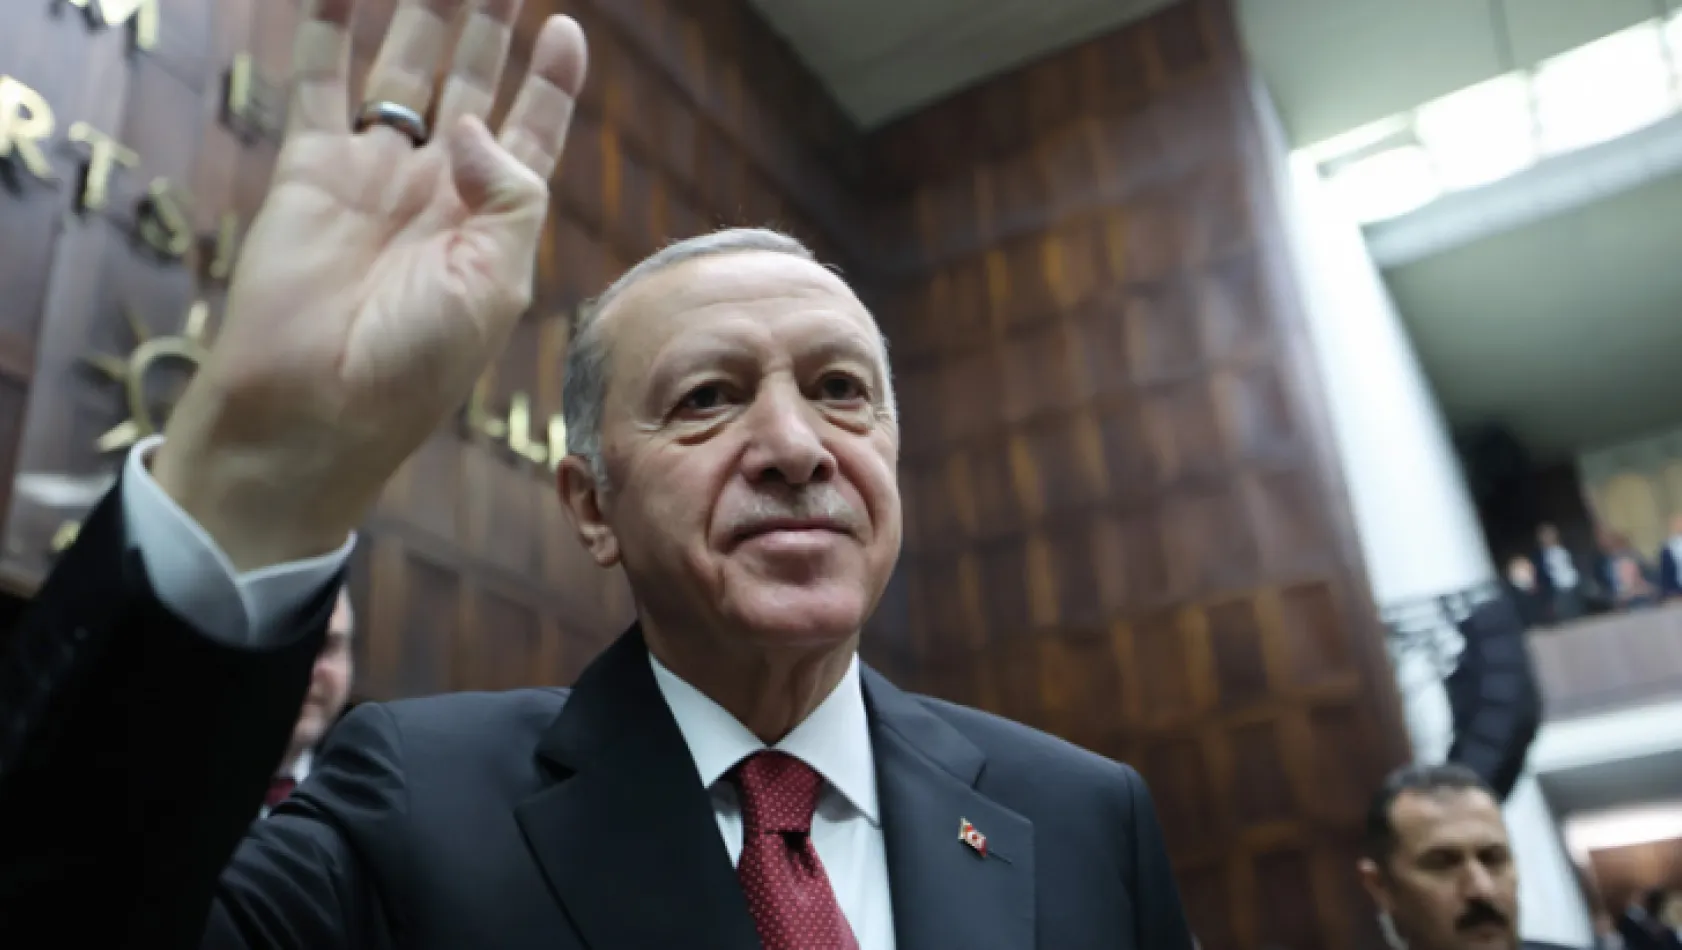 Erdoğan: Enflasyon tüm dünyanın sorunu